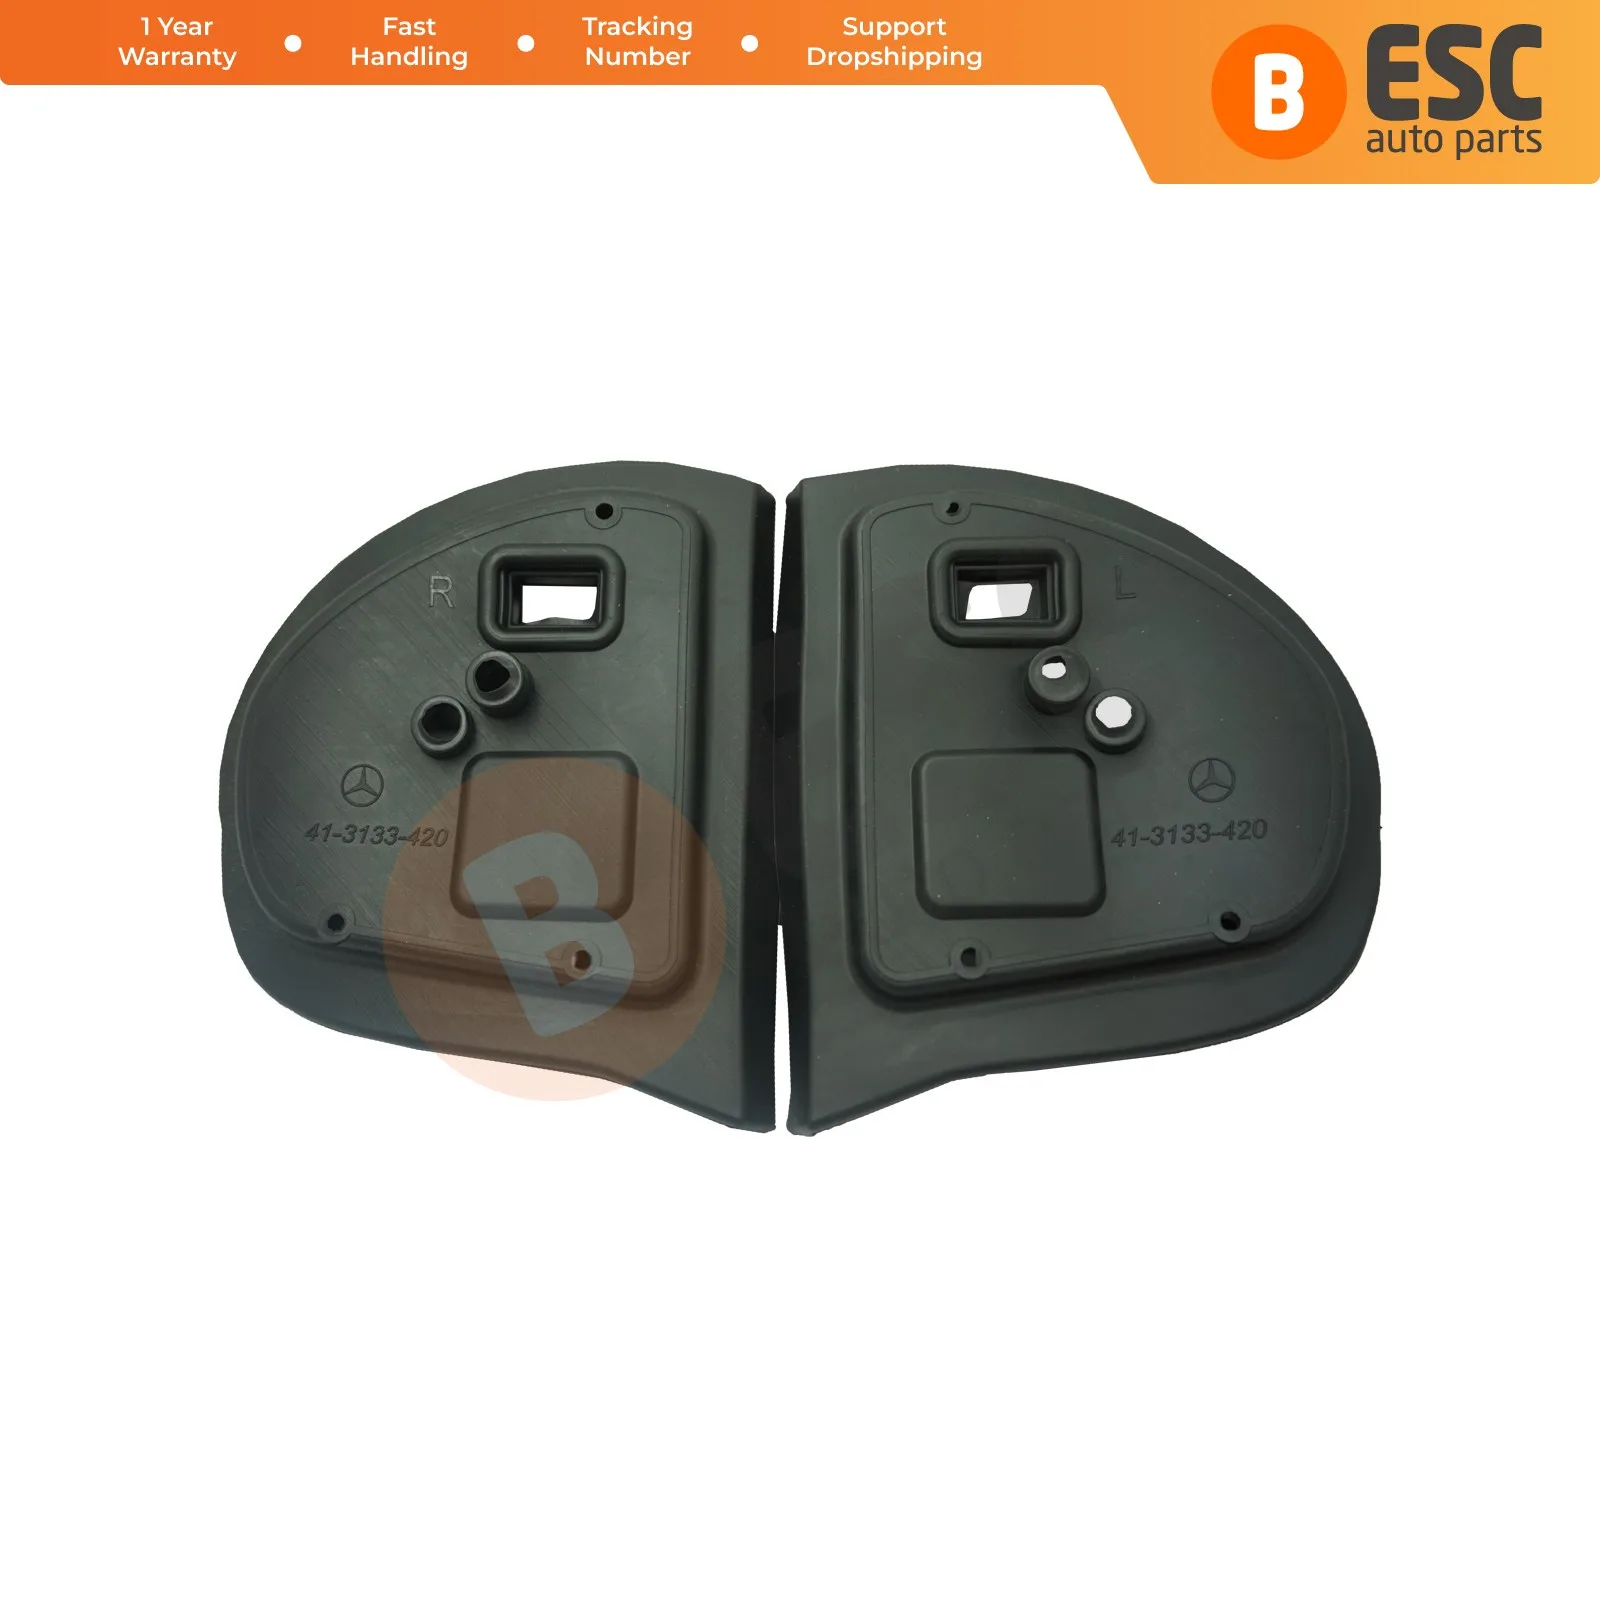 

ESC Auto Parts ESP845 Exterior Mirror Rubber Seals L+R Pads 413131418 LHD for Mercedes Benz W211 E Class & W203 C Class